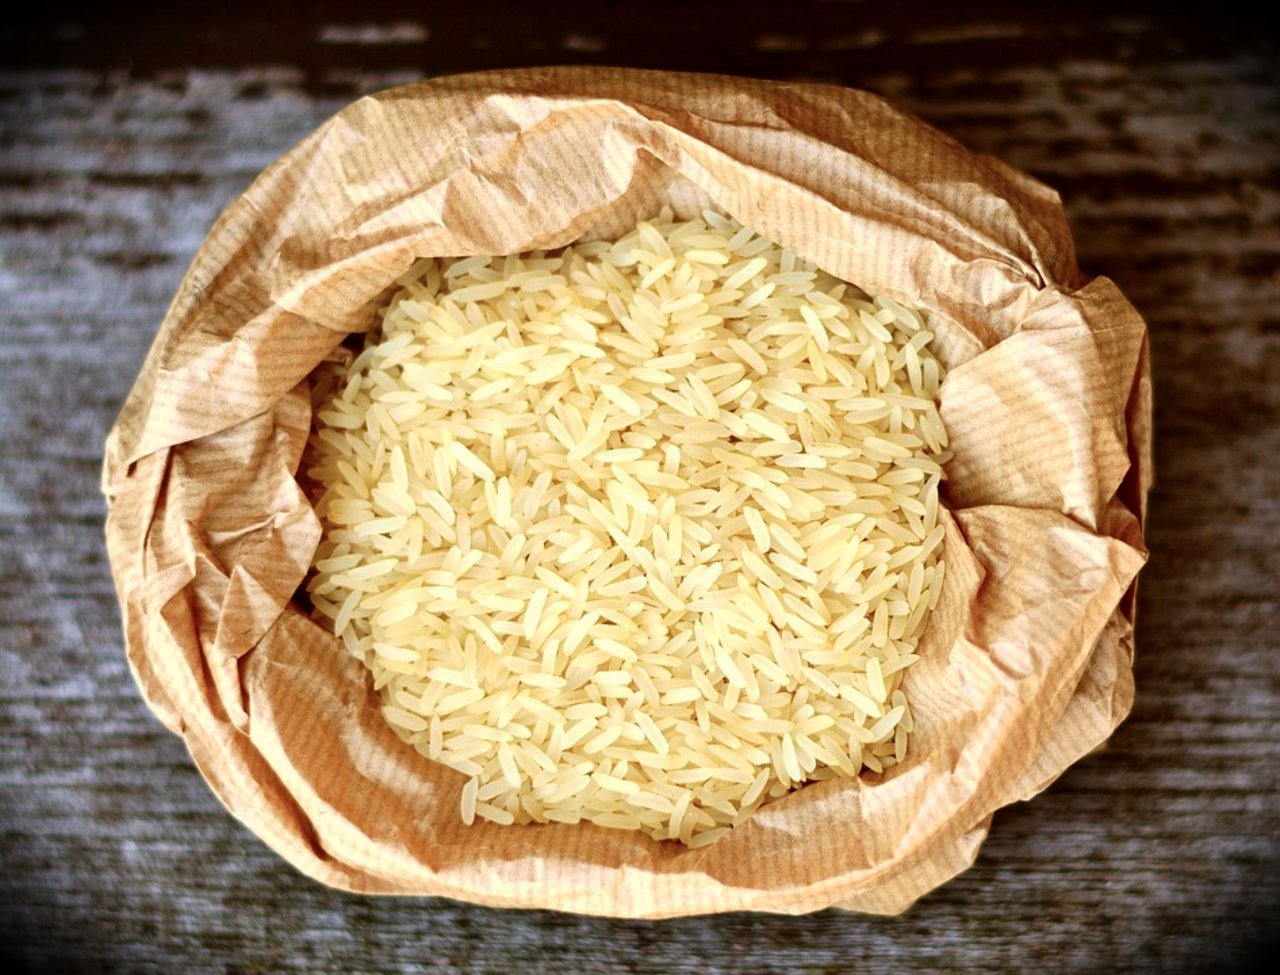 Einige Getreide wie Reis und Weizen könnten bis zum Jahr 2050 bis zu 17 Prozent weniger Eisen, Zink und Eiweiss enthalten, so eine Studie. (Bild Pixabay)